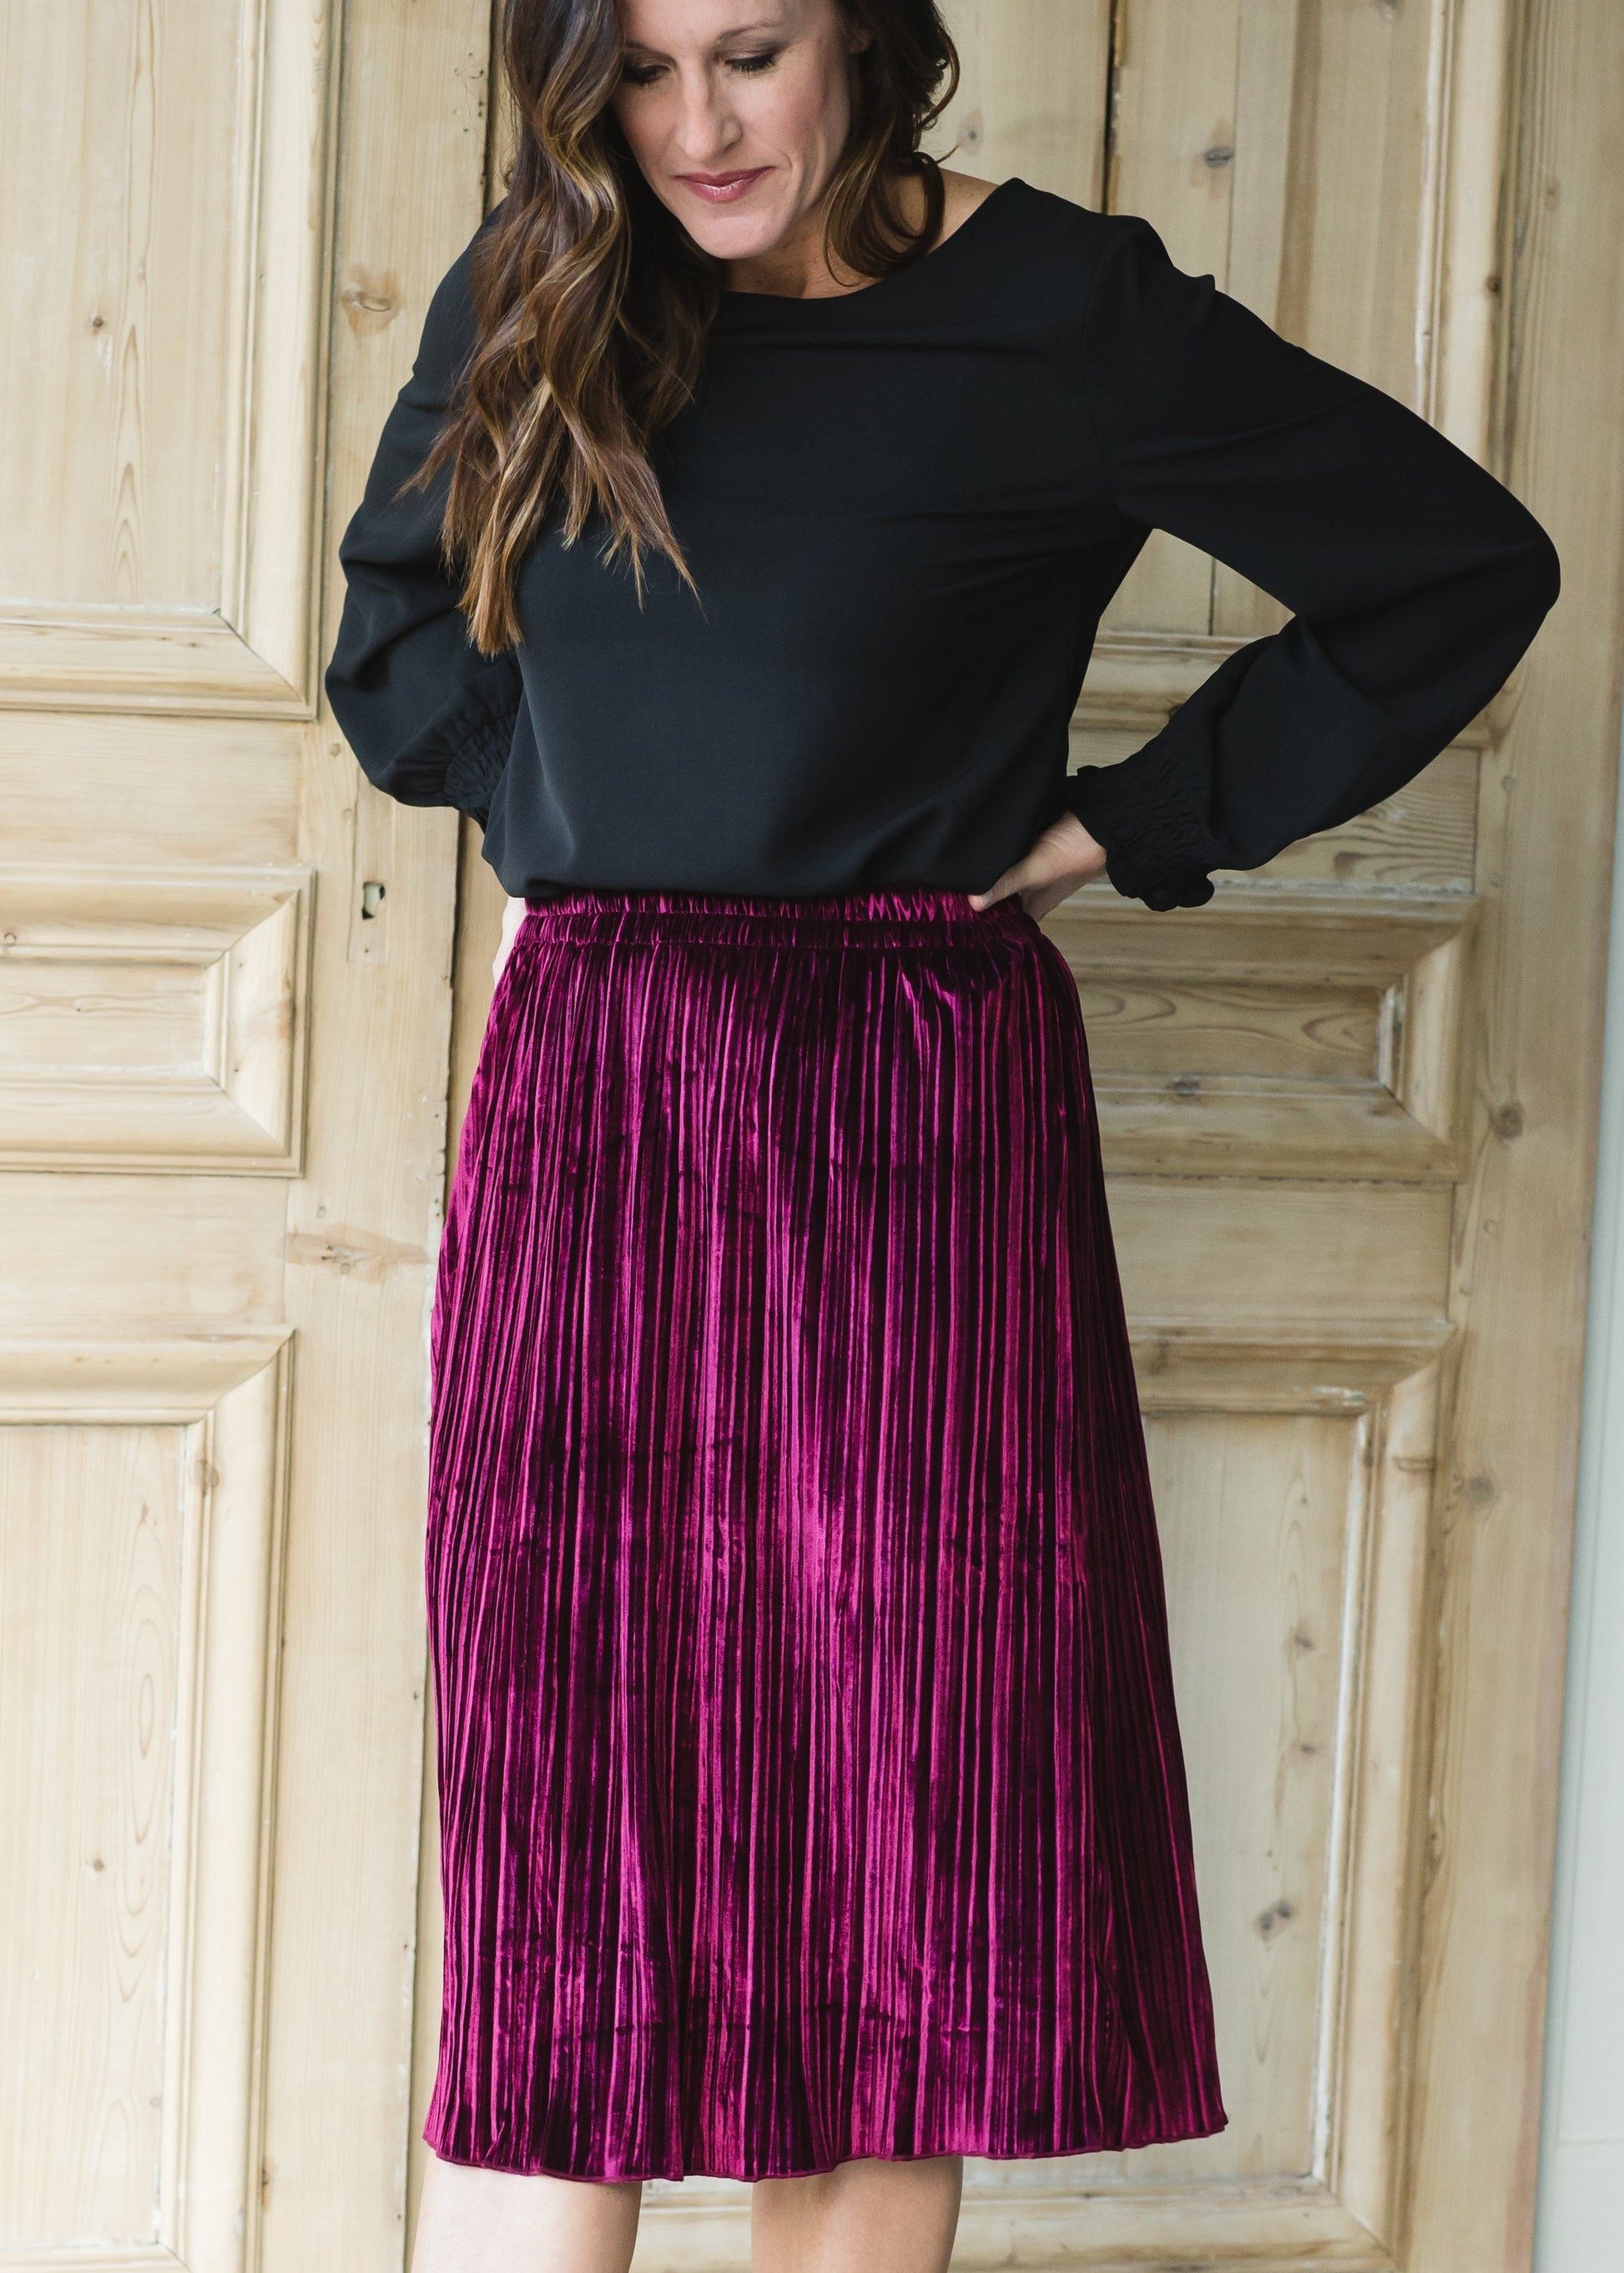 Burgundy Velvet Pleated Midi Skirt - FINAL SALE Skirts